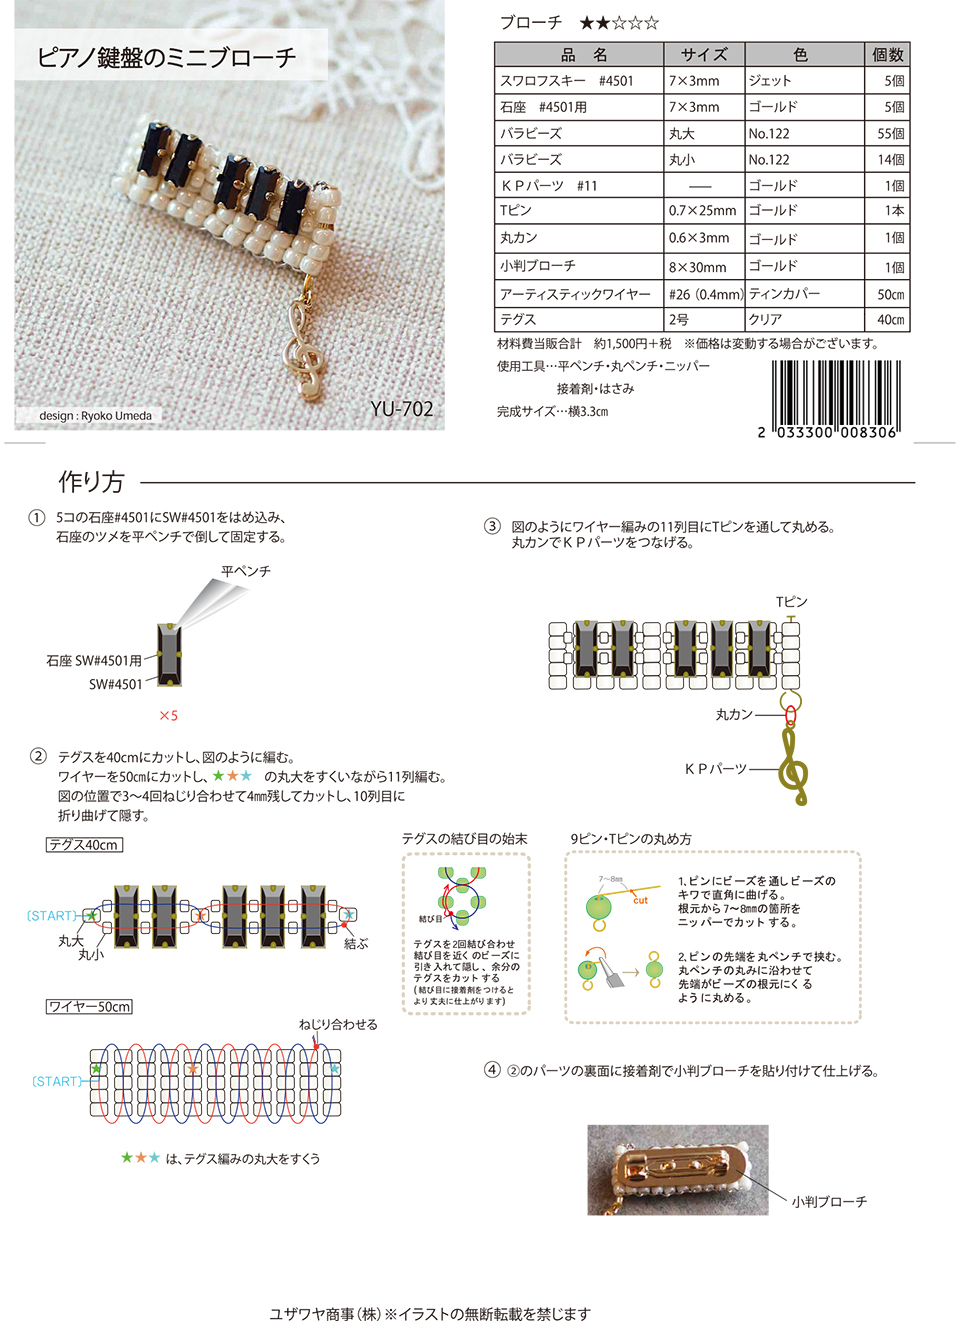 ピアノ鍵盤のミニブローチ Yu 702 ユザワヤオリジナルレシピ ユザワヤ 手芸用品 生地 ホビー材料専門店